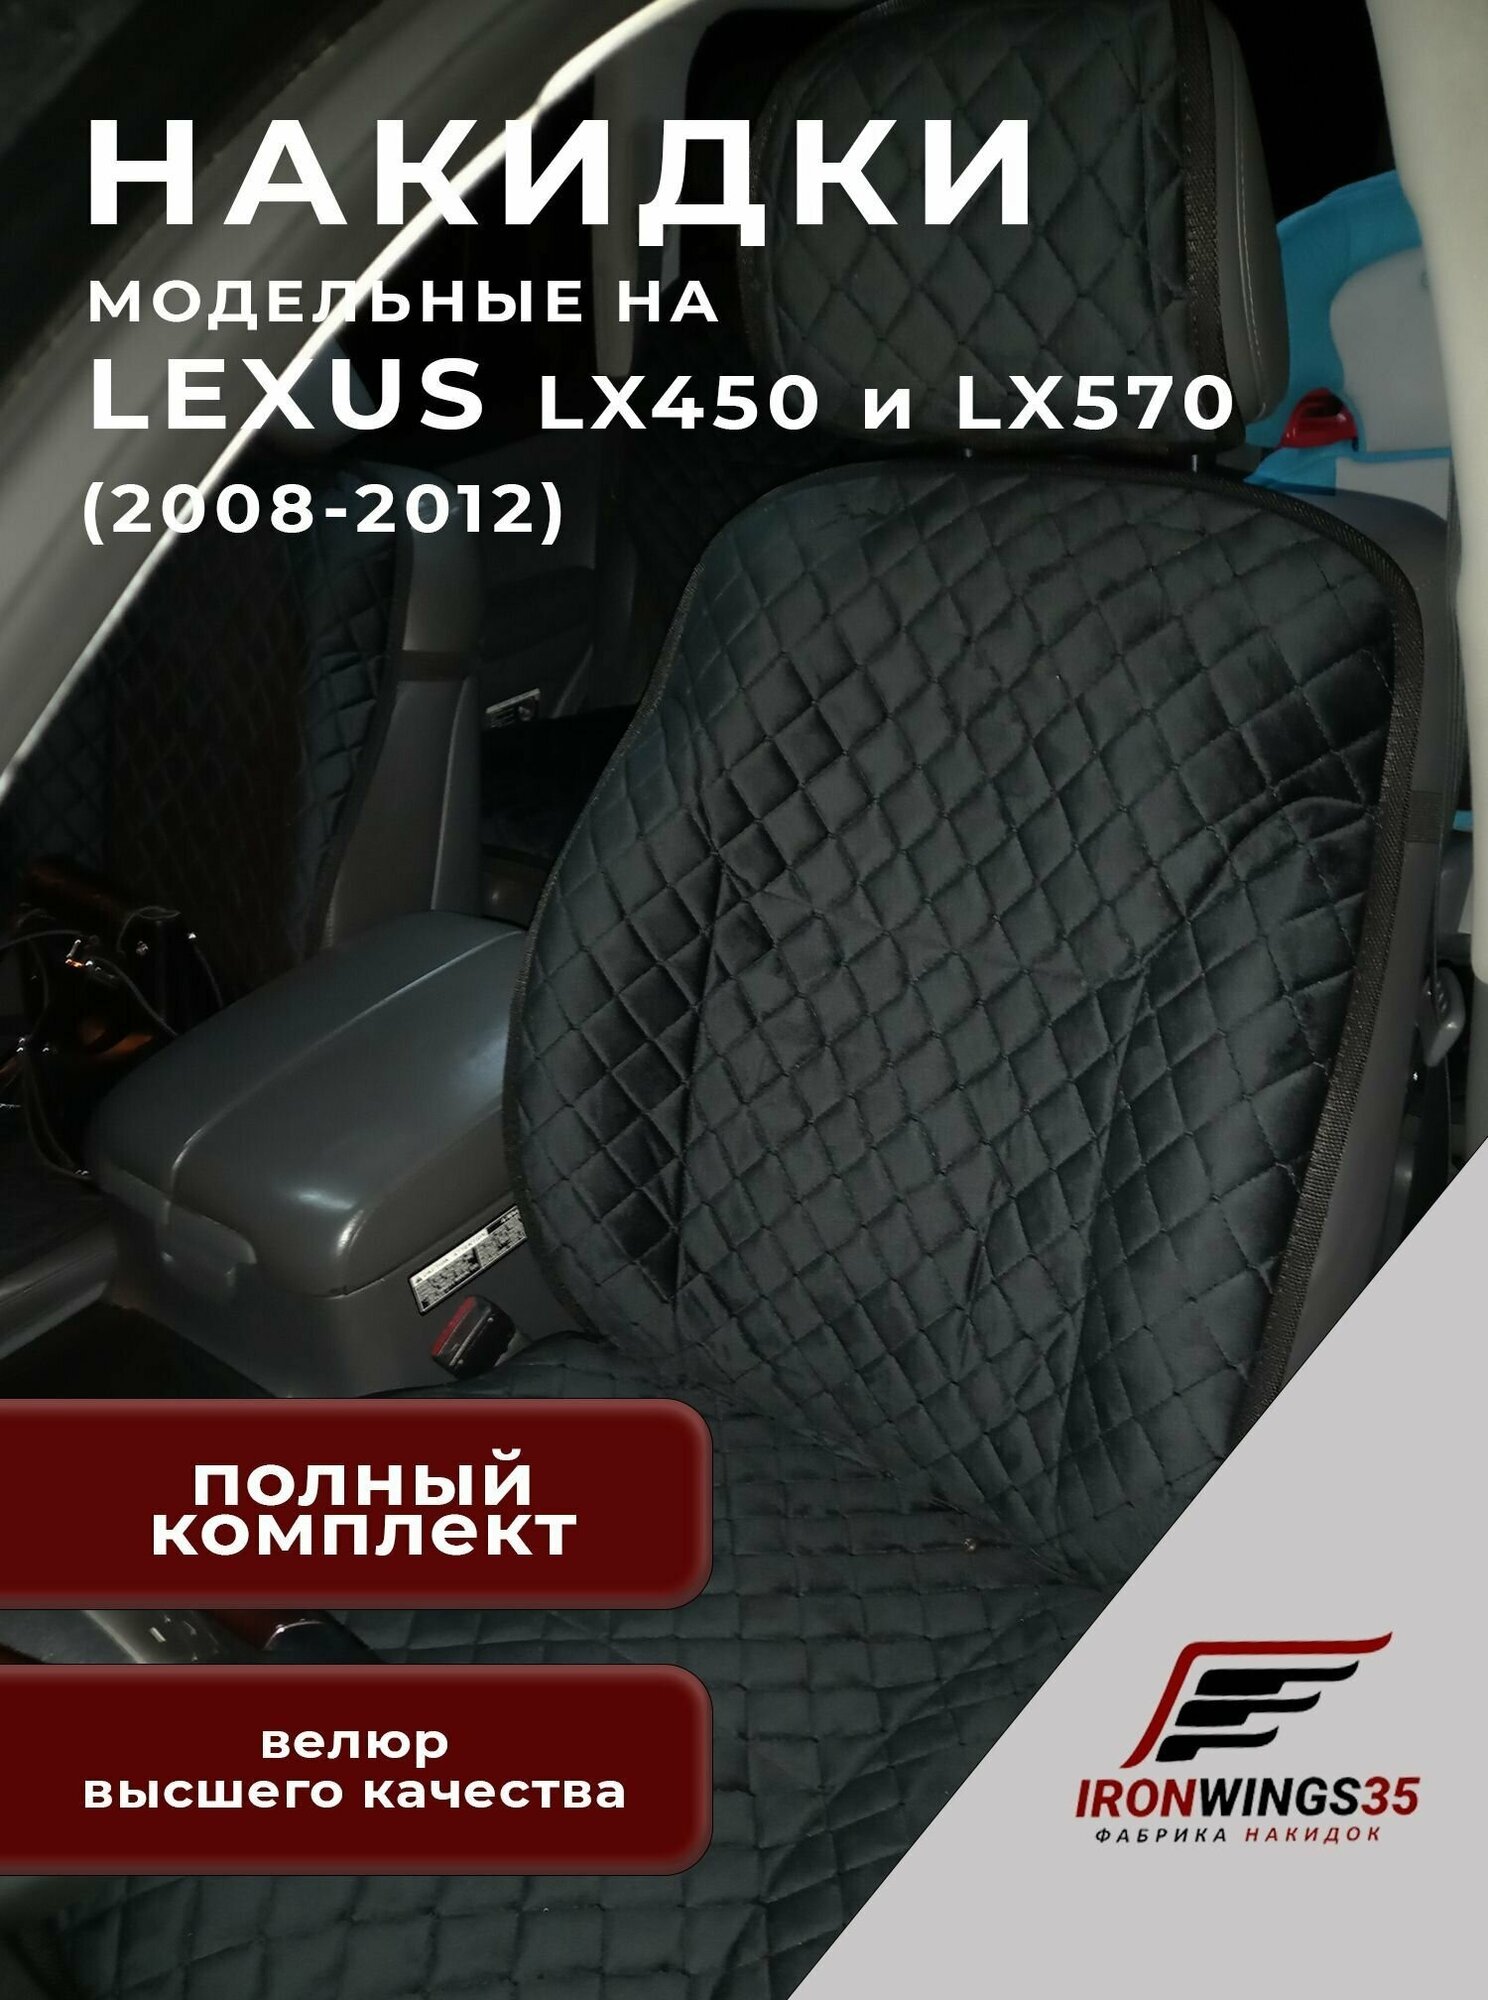 Комплект накидок на передние и задние сиденья автомобиля LEXUS LX450 LX570 из велюра в ромбик